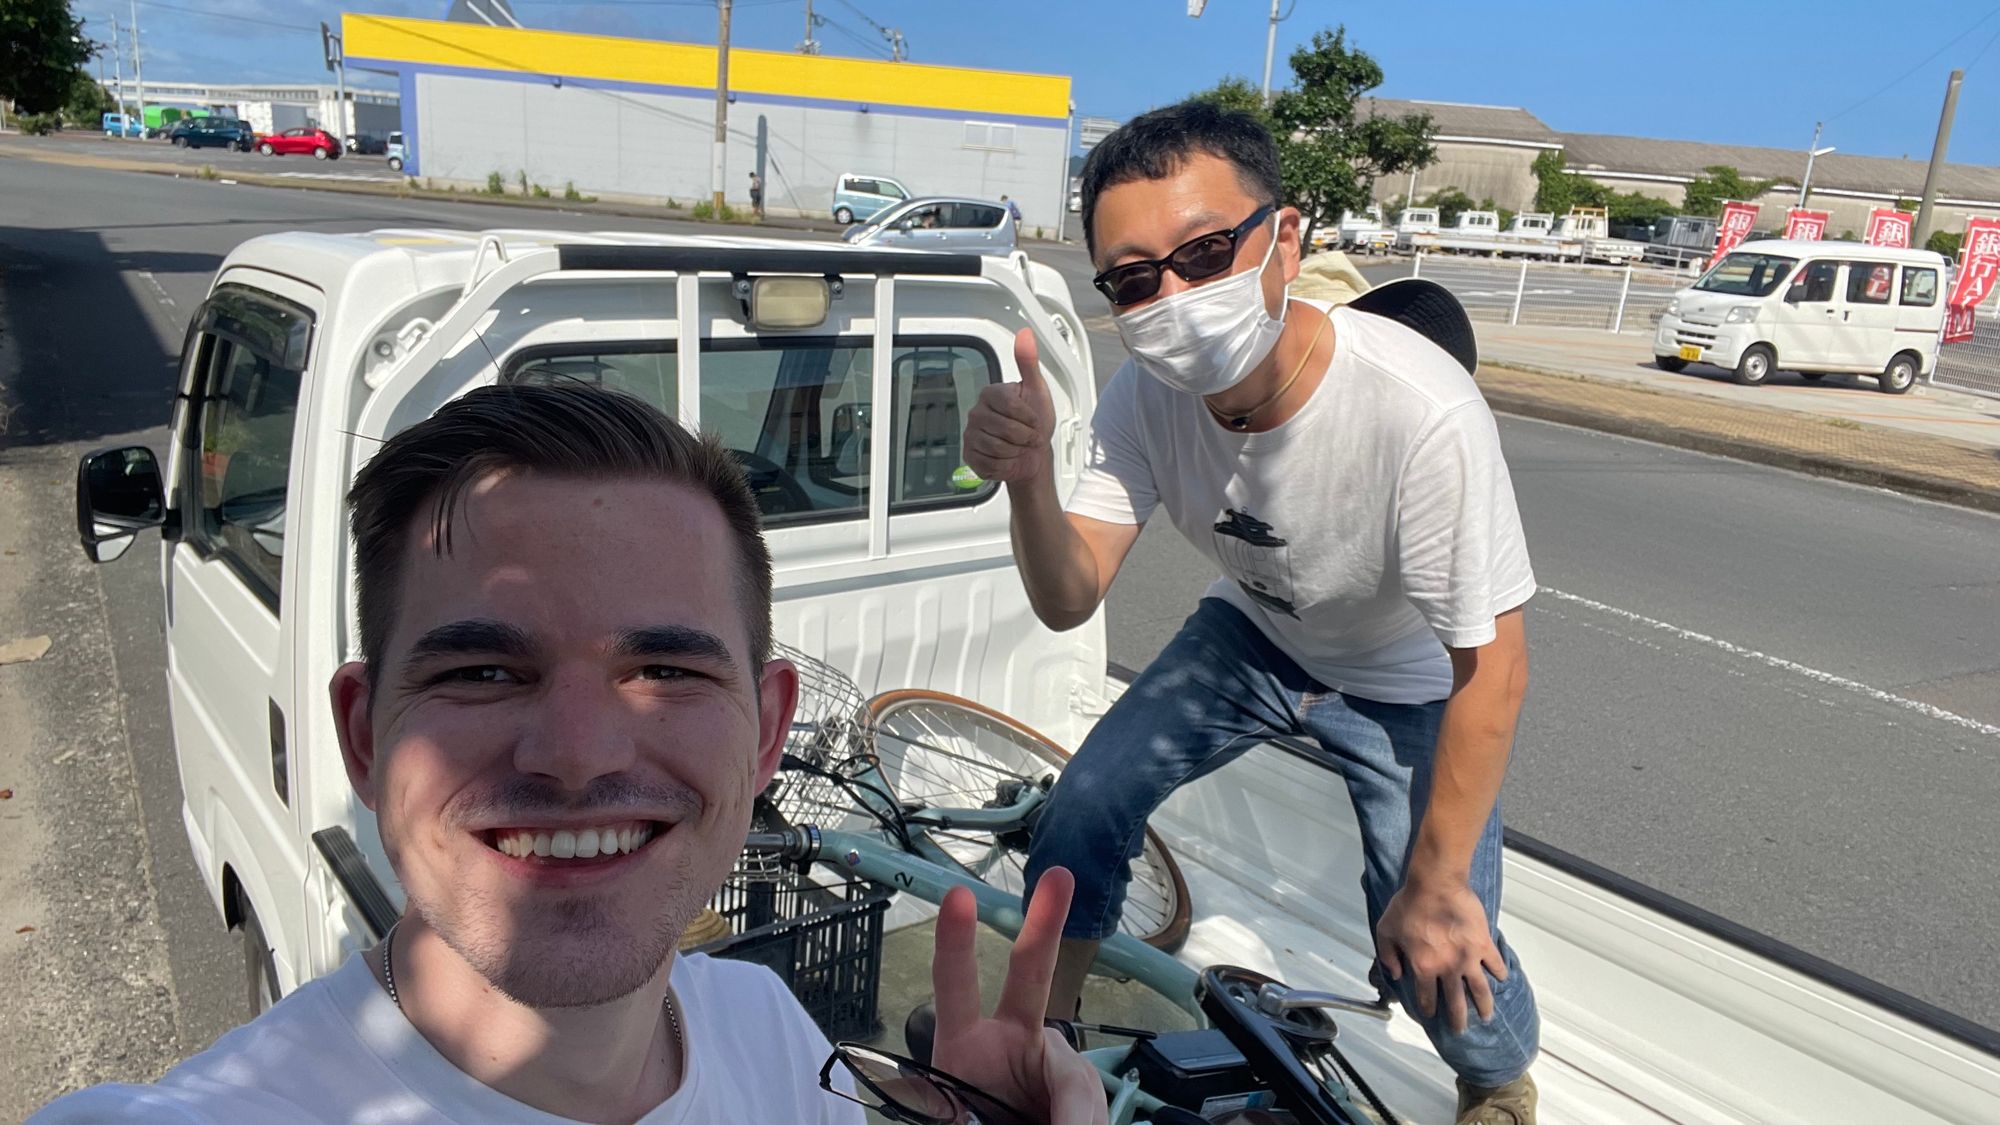 Brad In Japan: Travel in Japan